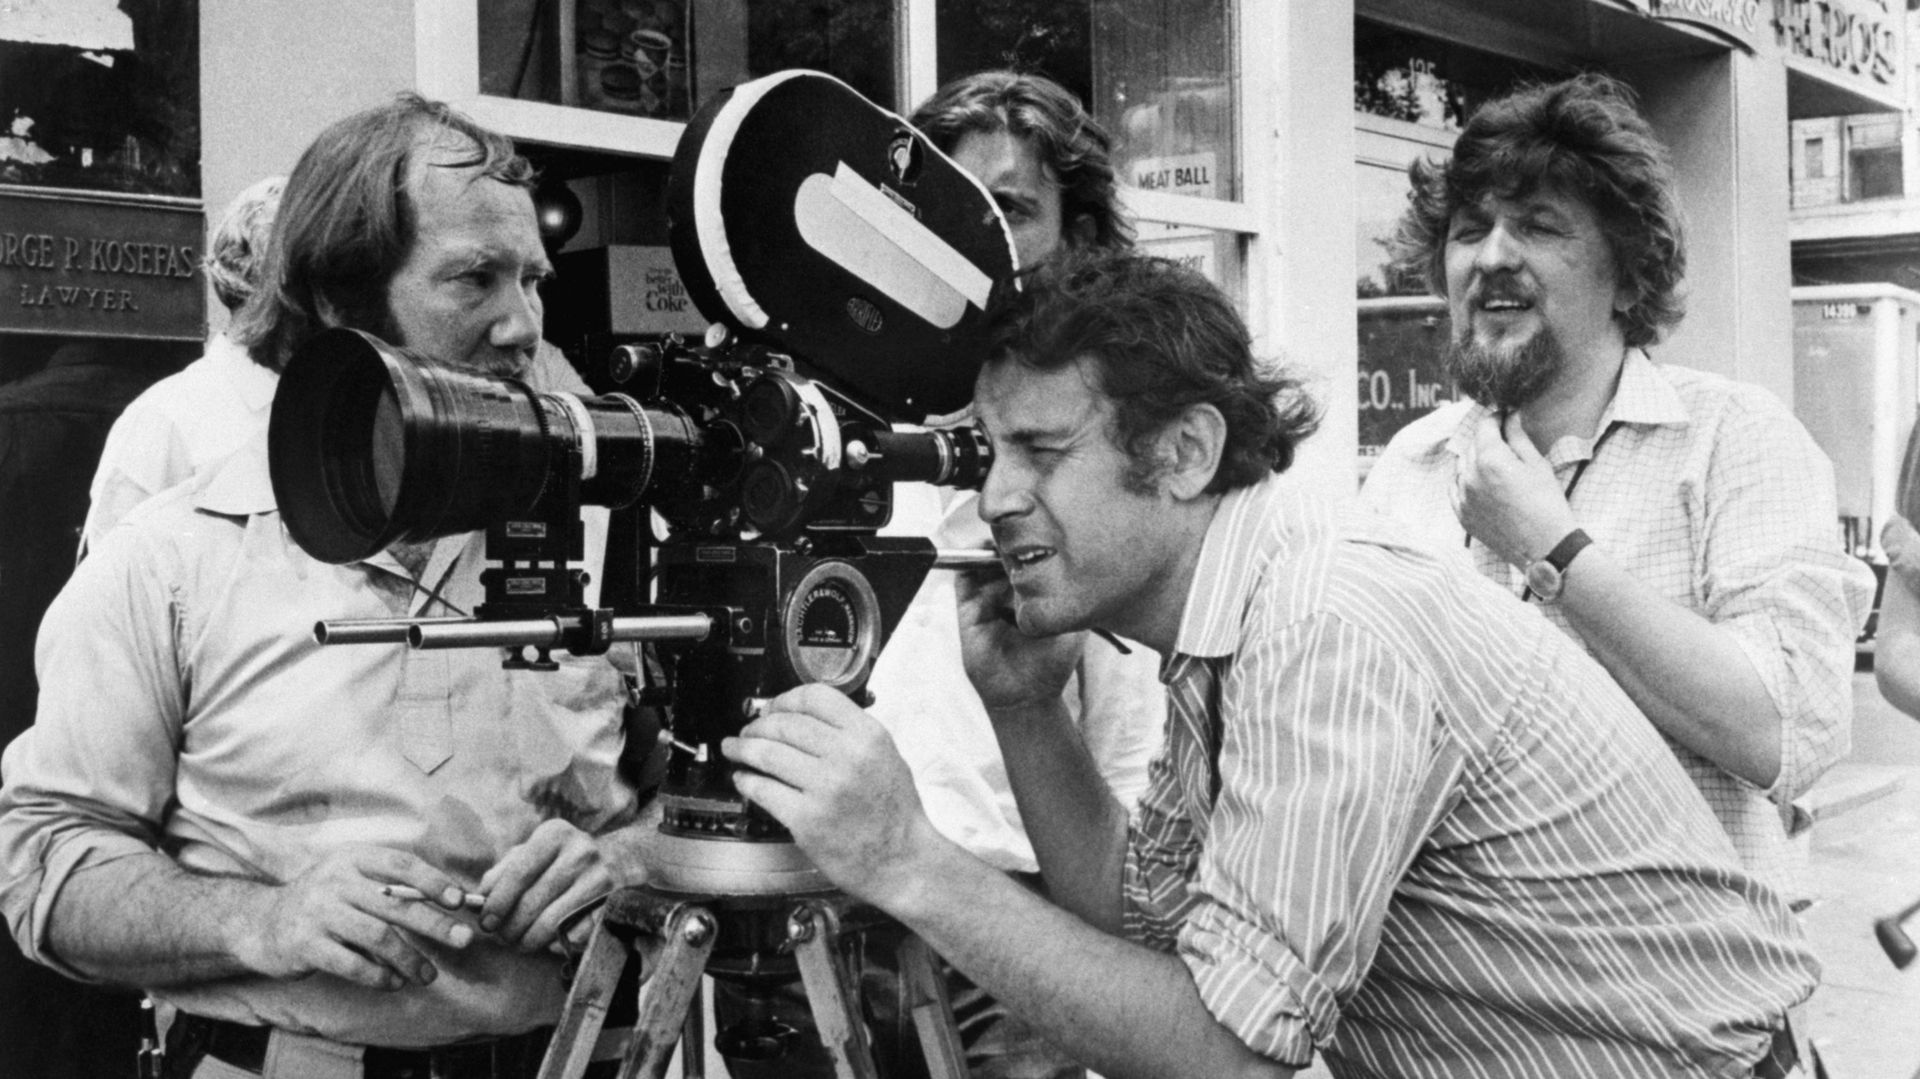 30/10/1970-New York, le réalisateur Milos Forman derrière la caméra sur un plateau de tournage dans Esat Village, testant une scène pour le film 'Taking off'